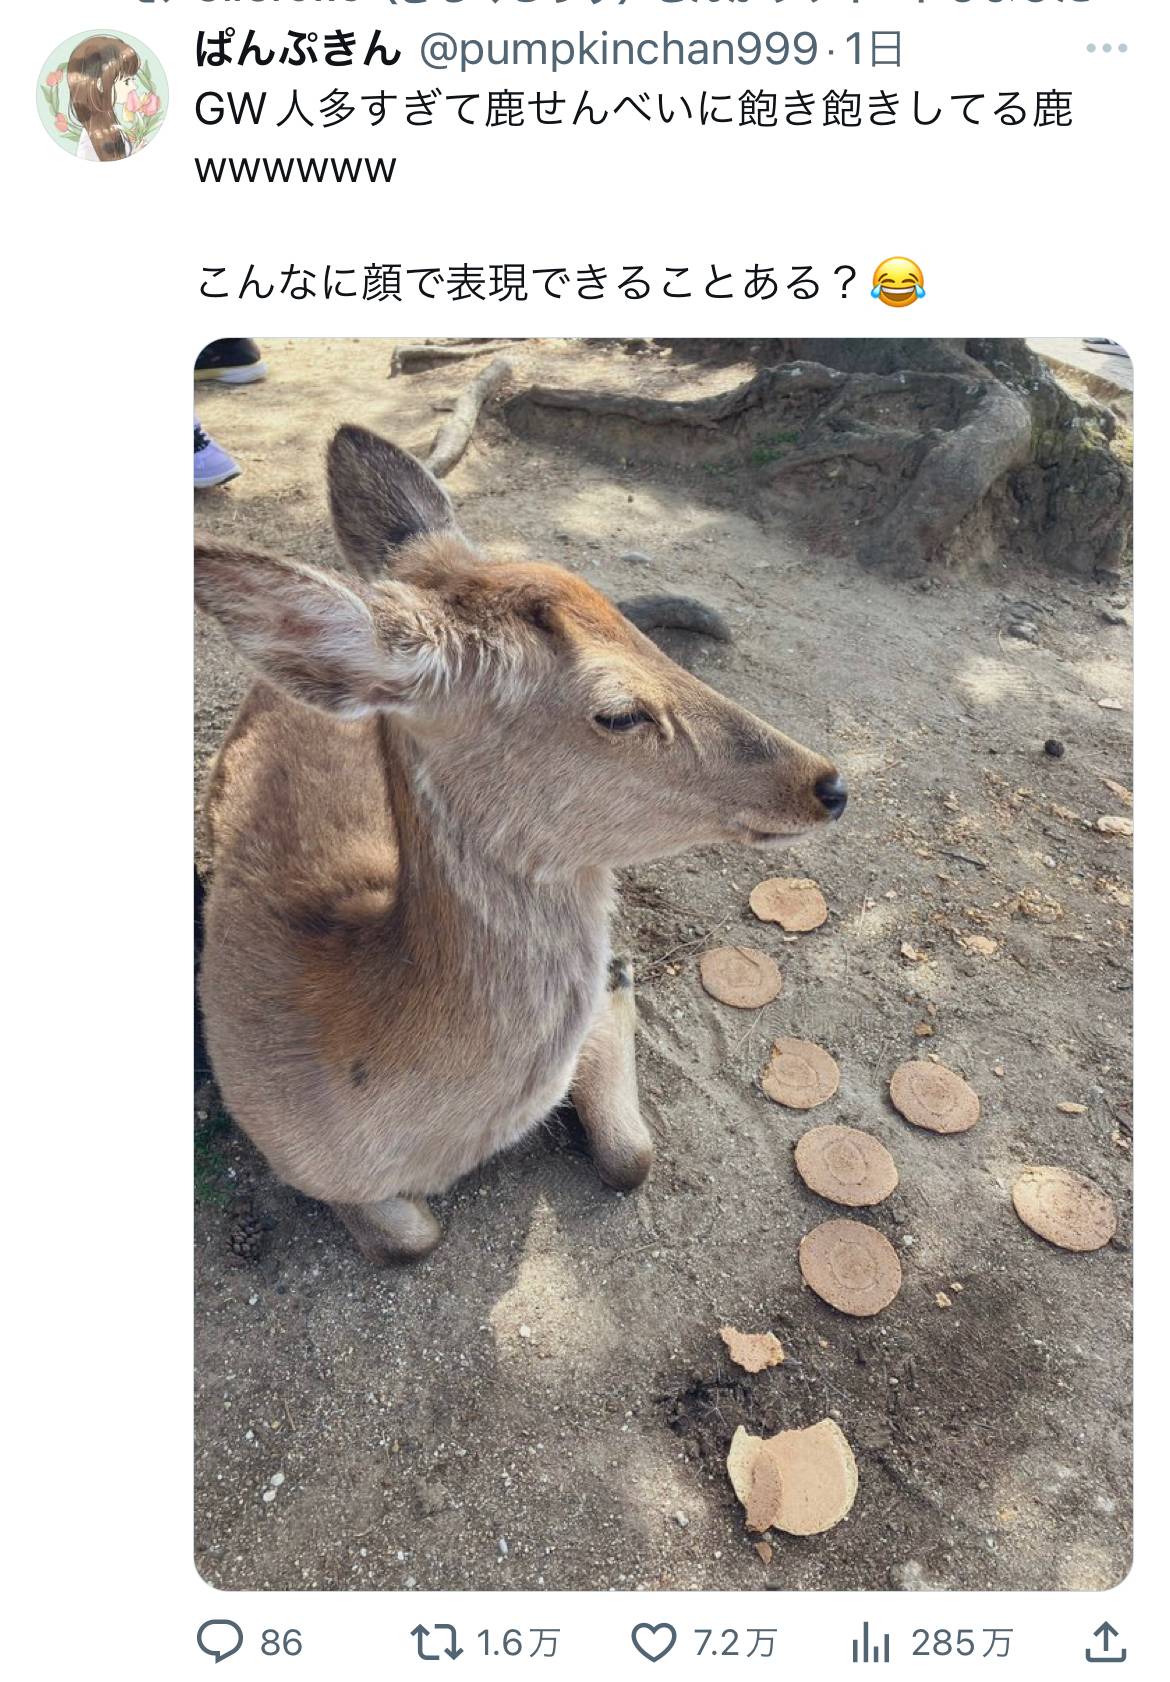 【画像】奈良の鹿さん、GWで人が来すぎて鹿せんべいを拒否してしまう